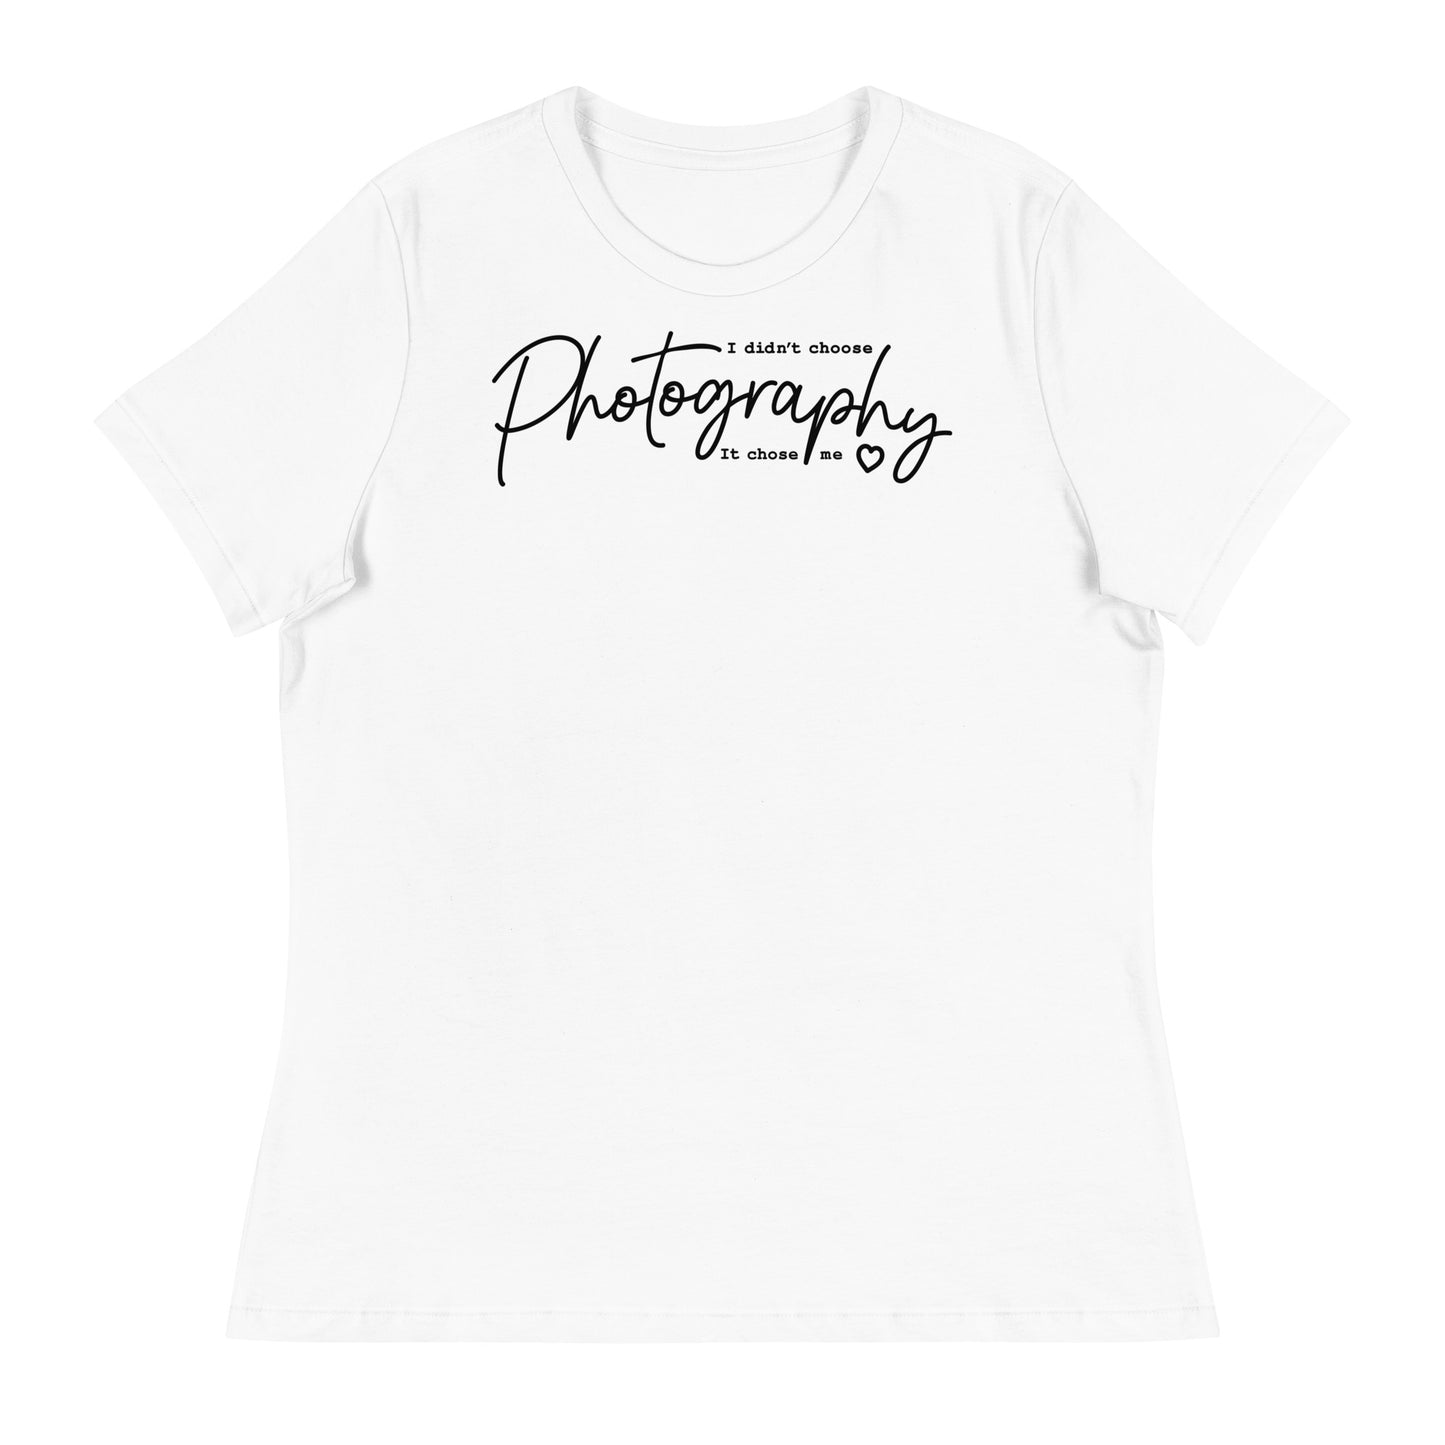 Camisetas de niña - fotografía - Logo negro